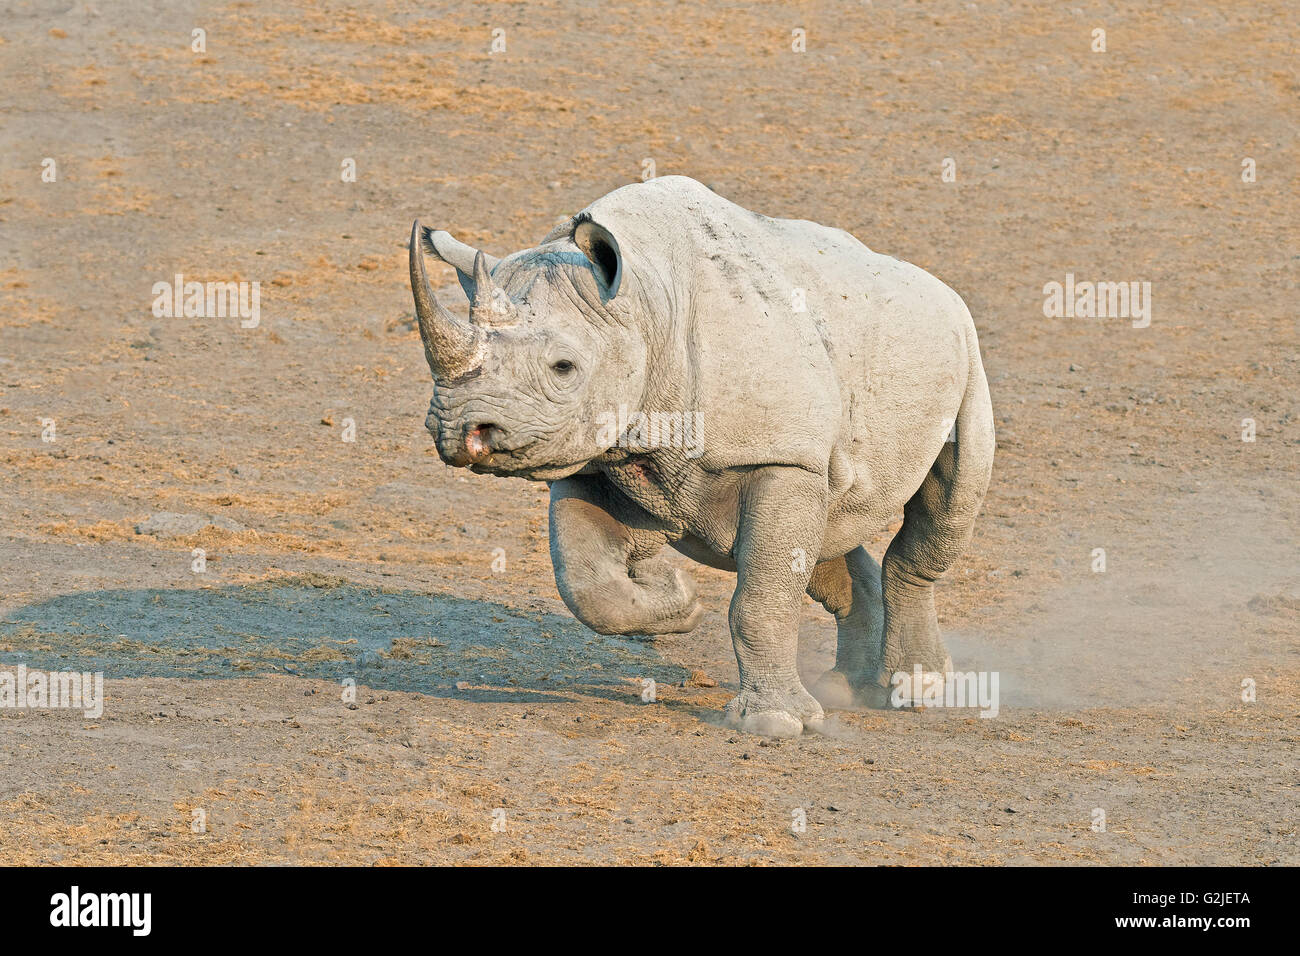 Disparition rhinocéros noir (Diceros bicornis), Etosha National Park, Namibie, Afrique du Sud Banque D'Images